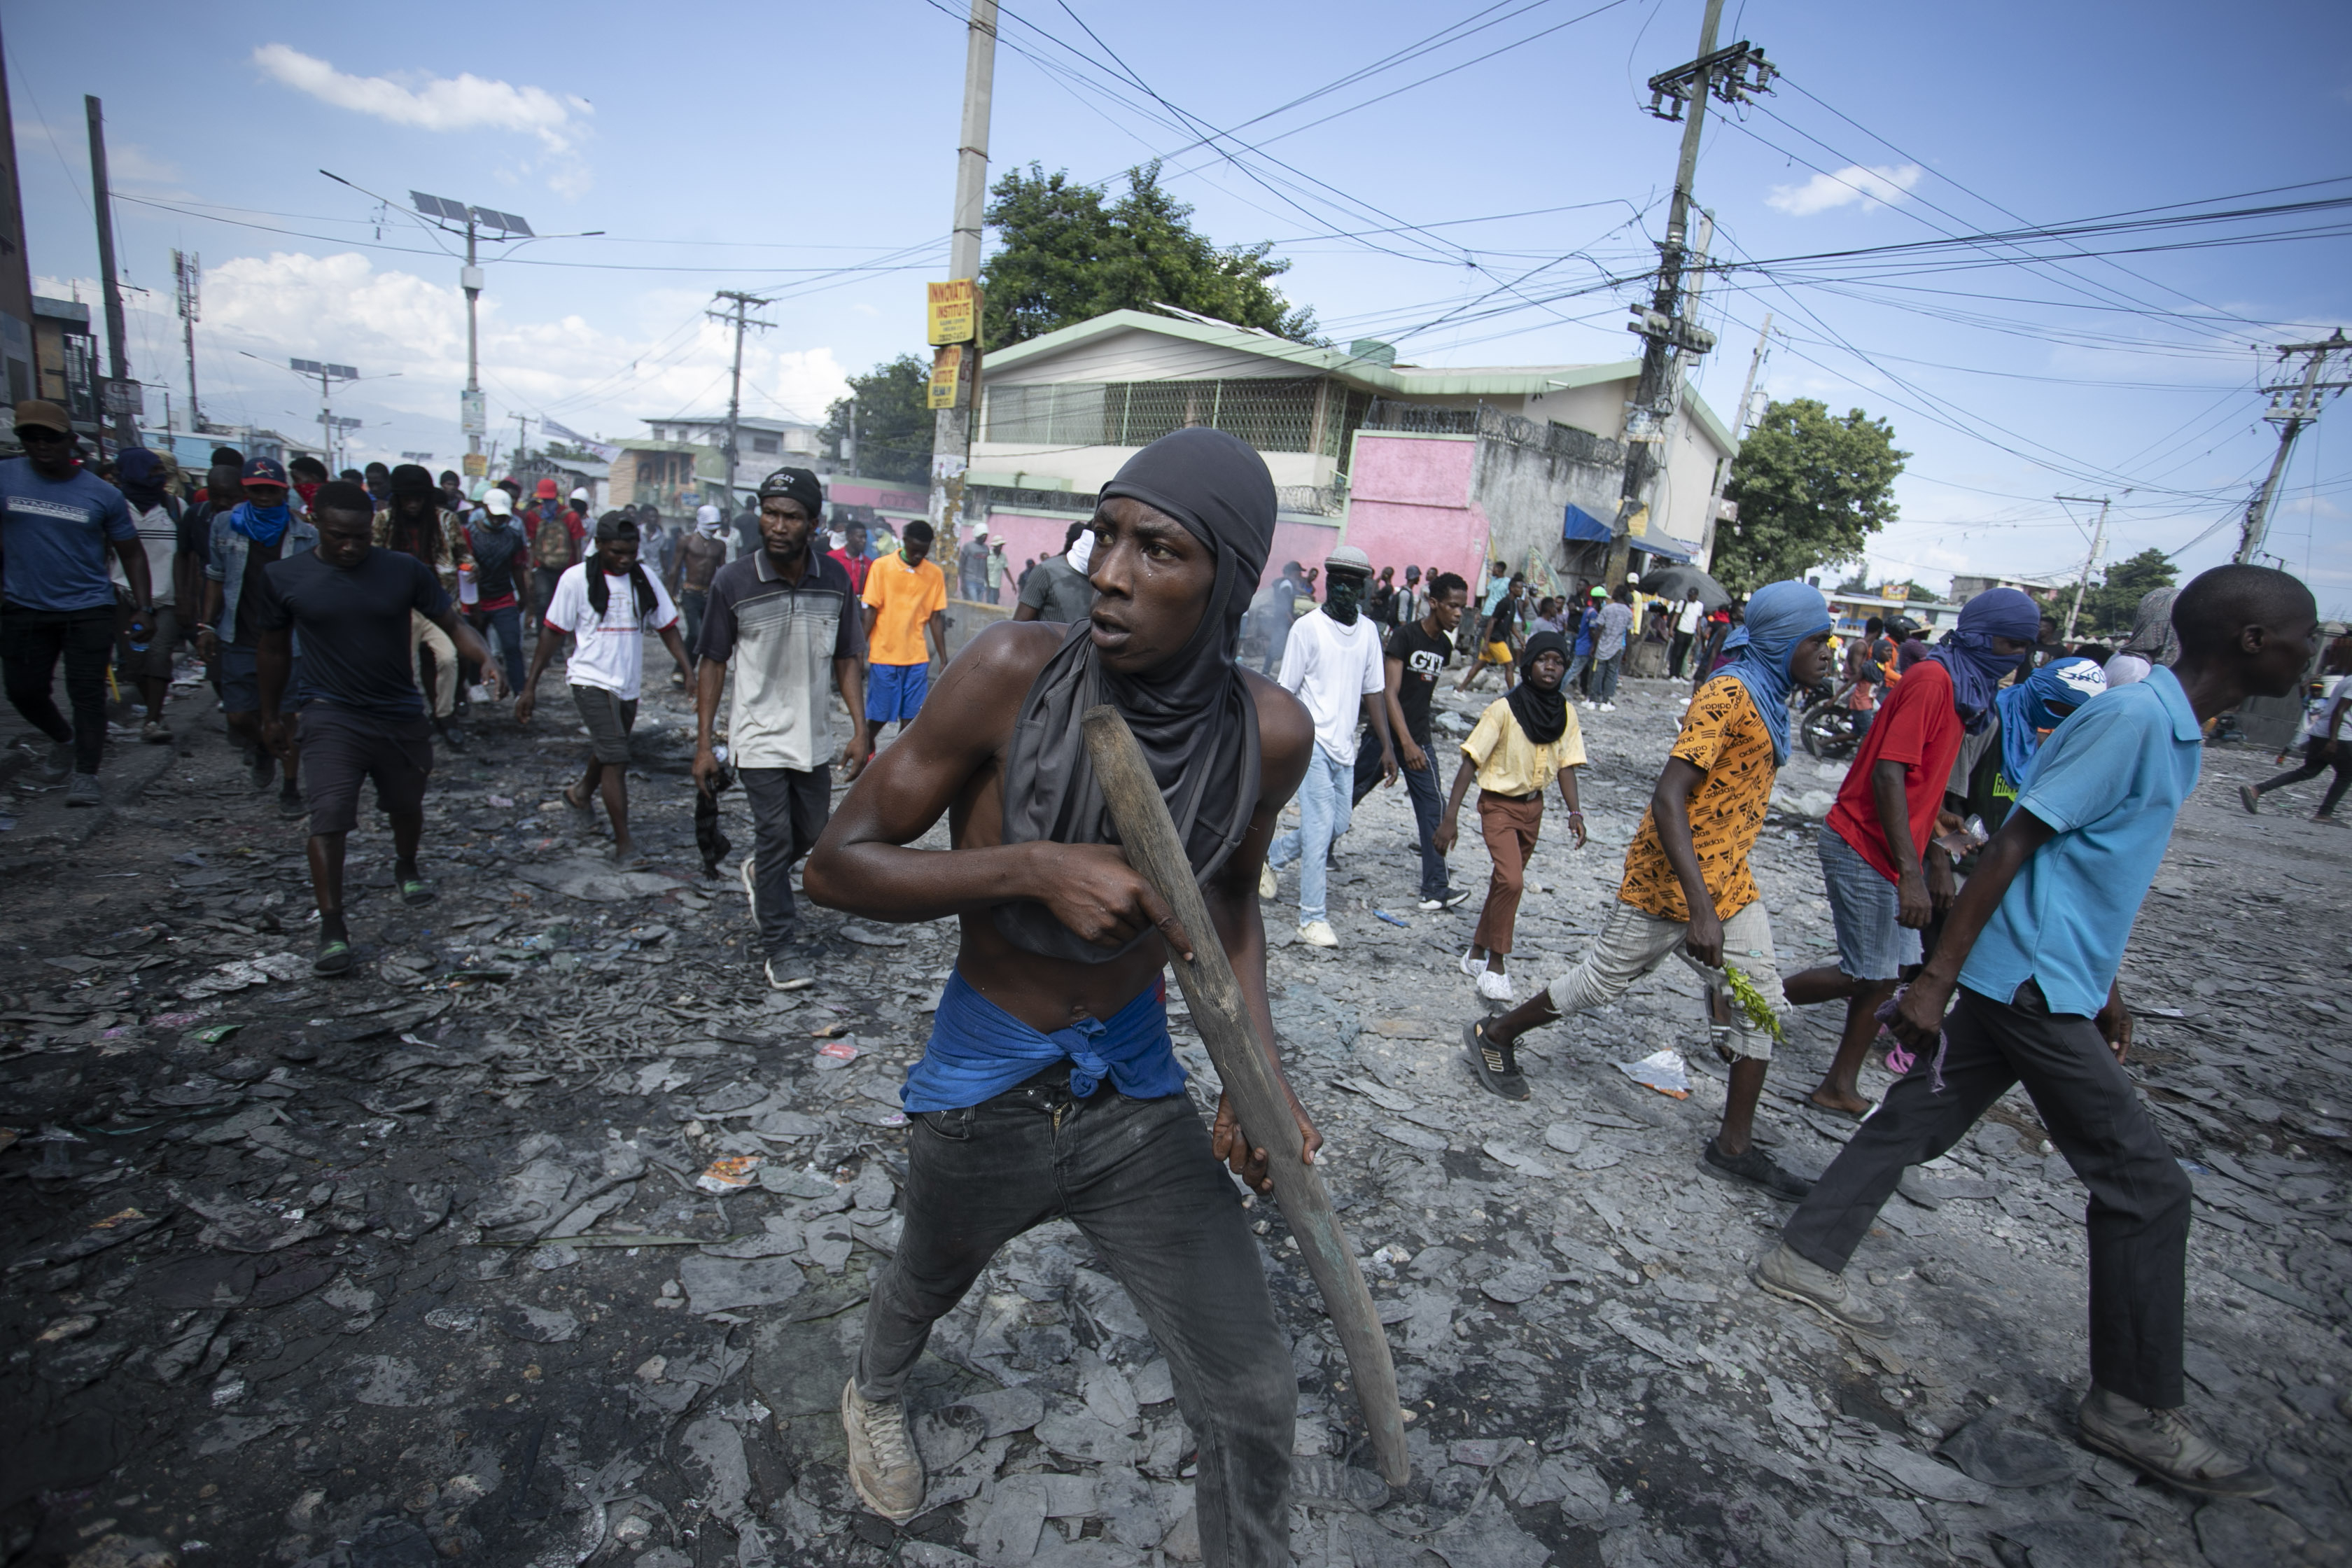 La titular de la cartera ministerial explicó que estas sanciones “tienen como objetivo ejercer presión sobre los responsables de la violencia en curso, incluida la violencia sexual generalizada, y la inestabilidad en Haití”. (AP)